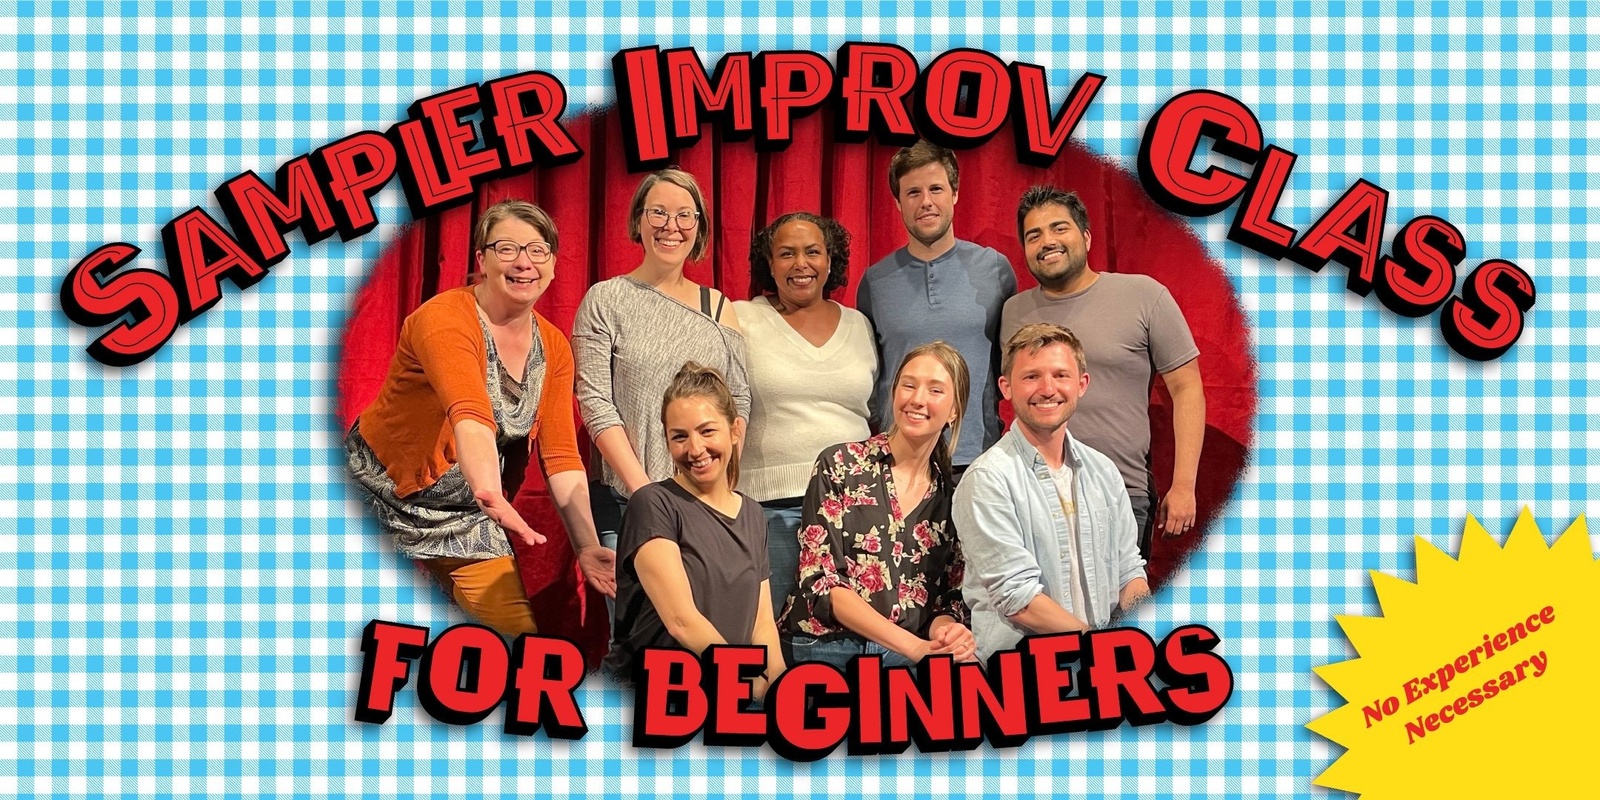 Banner image for Sampler Improv Class For Beginners